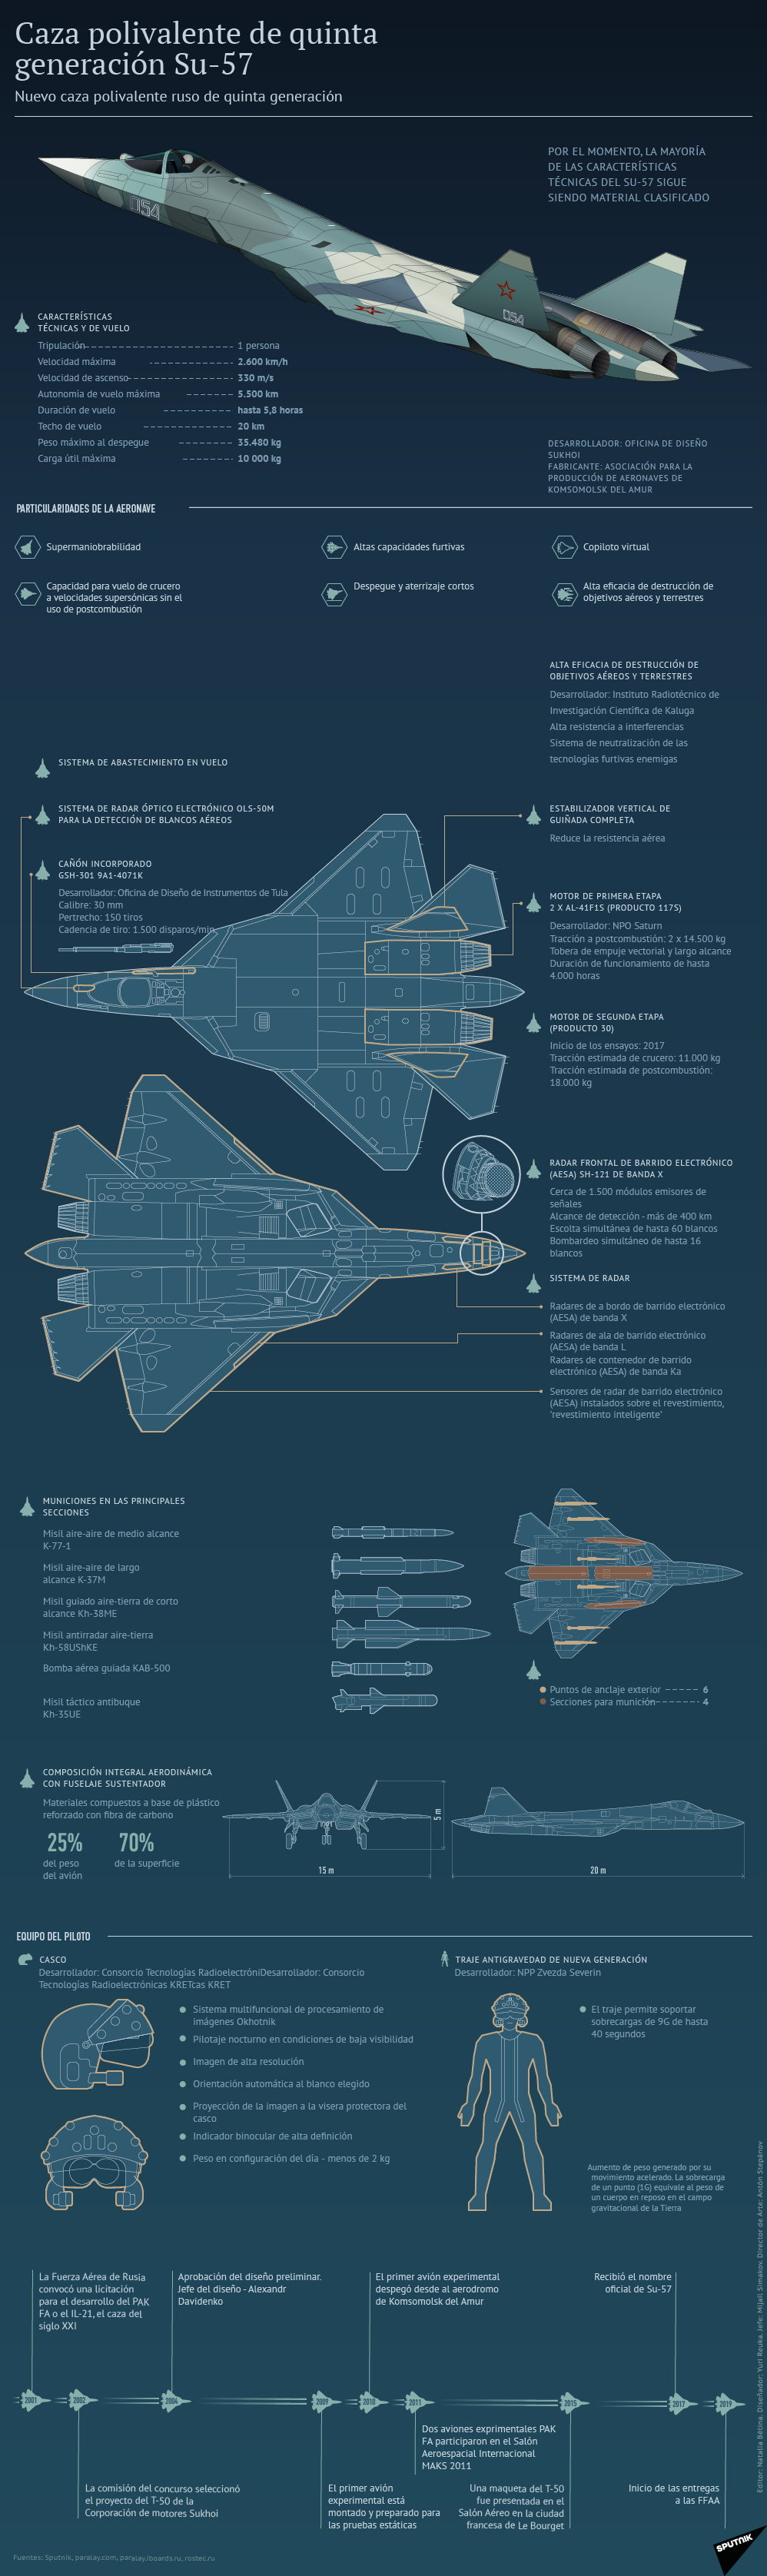 El rey de los cielos rusos: el T-50 ruso en detalle - Sputnik Mundo